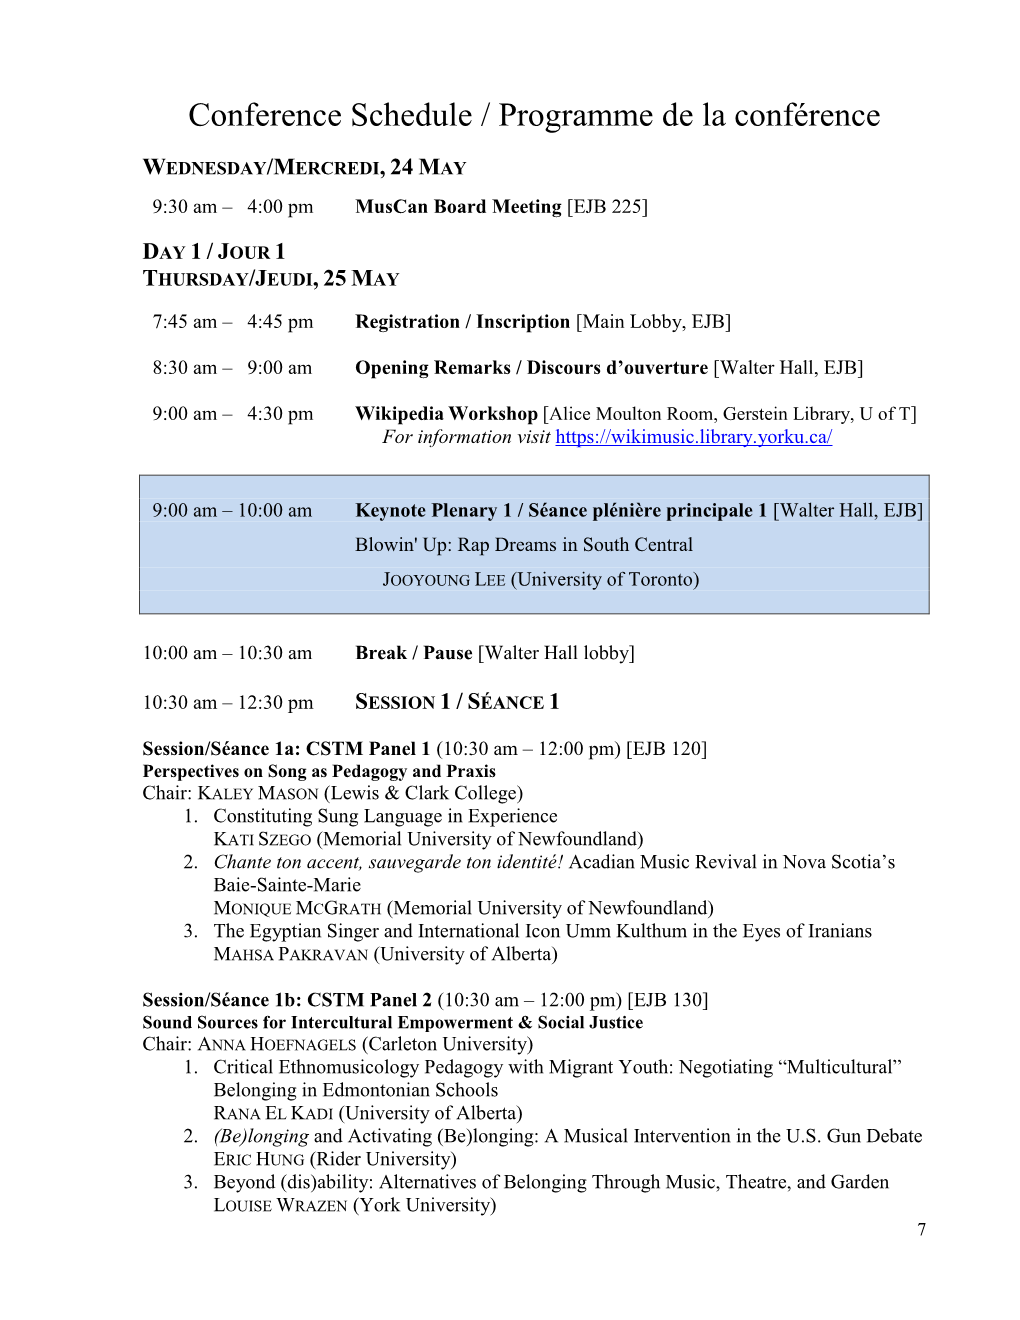 Conference Schedule / Programme De La Conférence